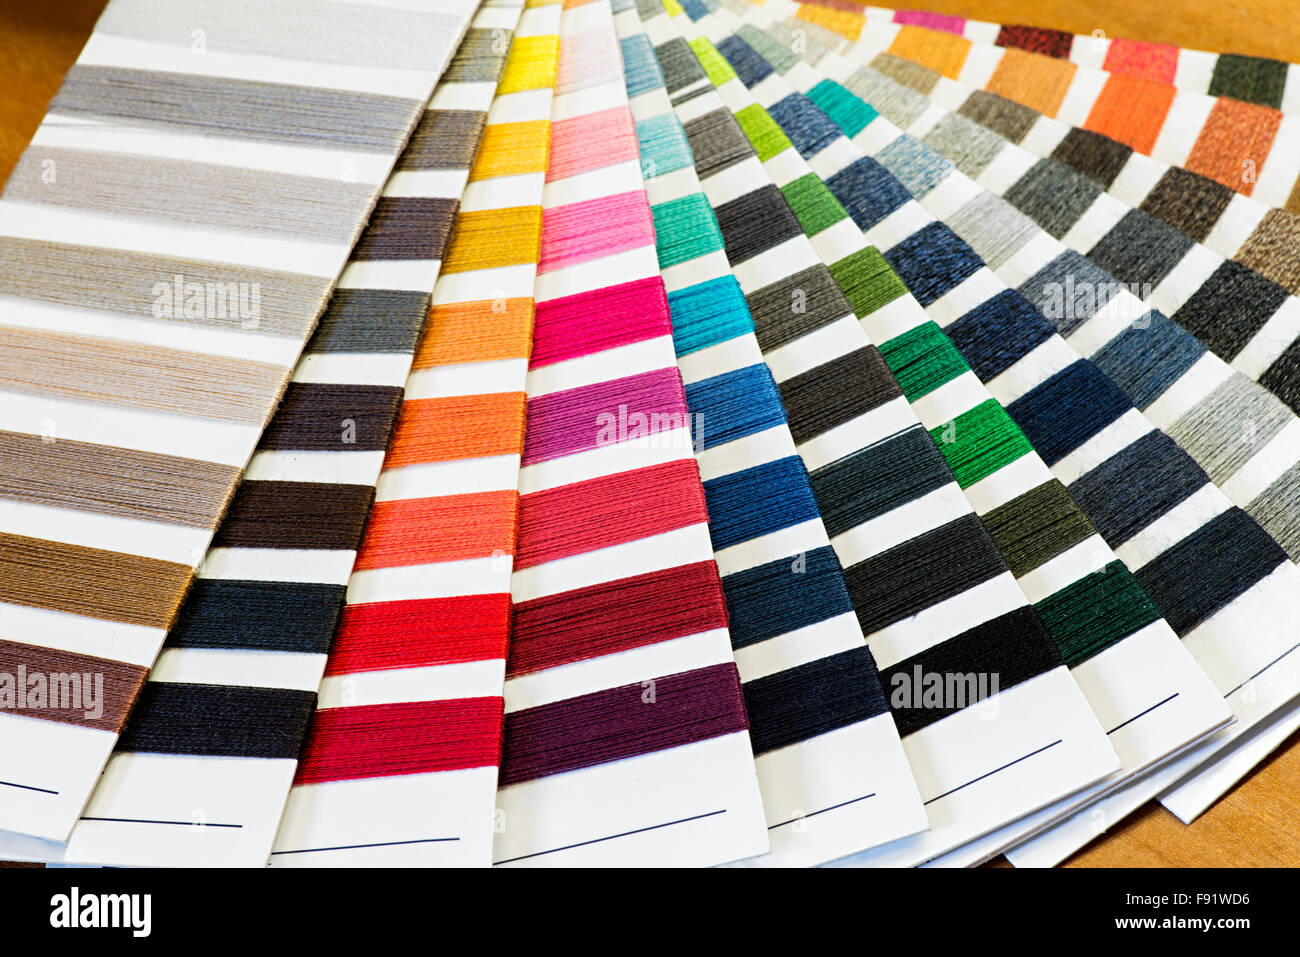 Textile Stillleben Hintergrund - Baumwolle Thread Farbmuster aufgefächert in bunten Array Stockfoto